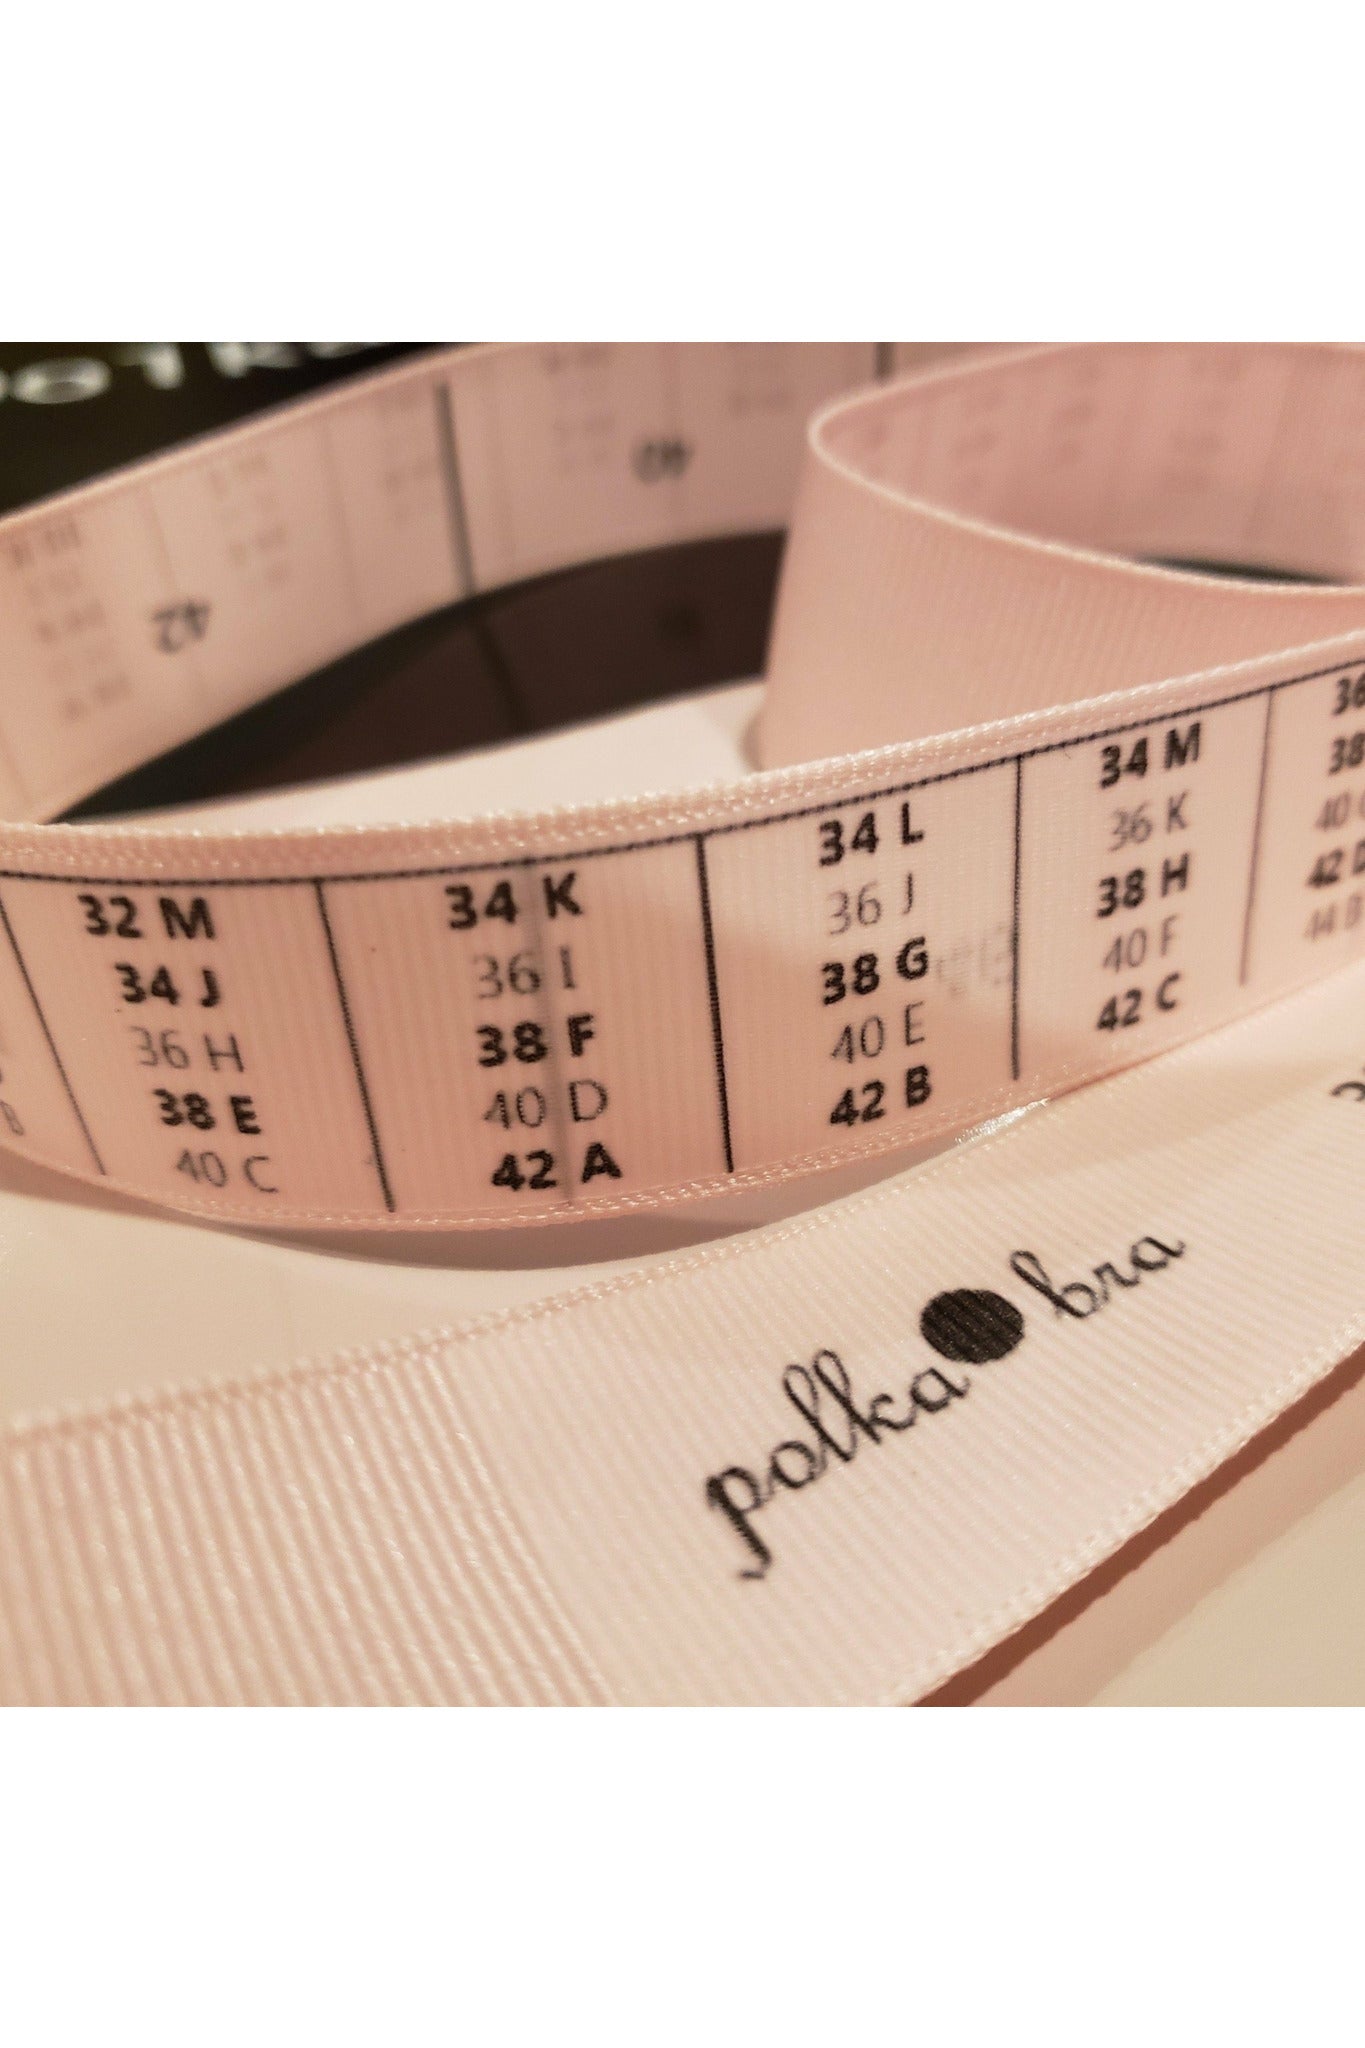 Polka dot micromesh full-coverage bra, DIM, Shop Full-Busted Bras online